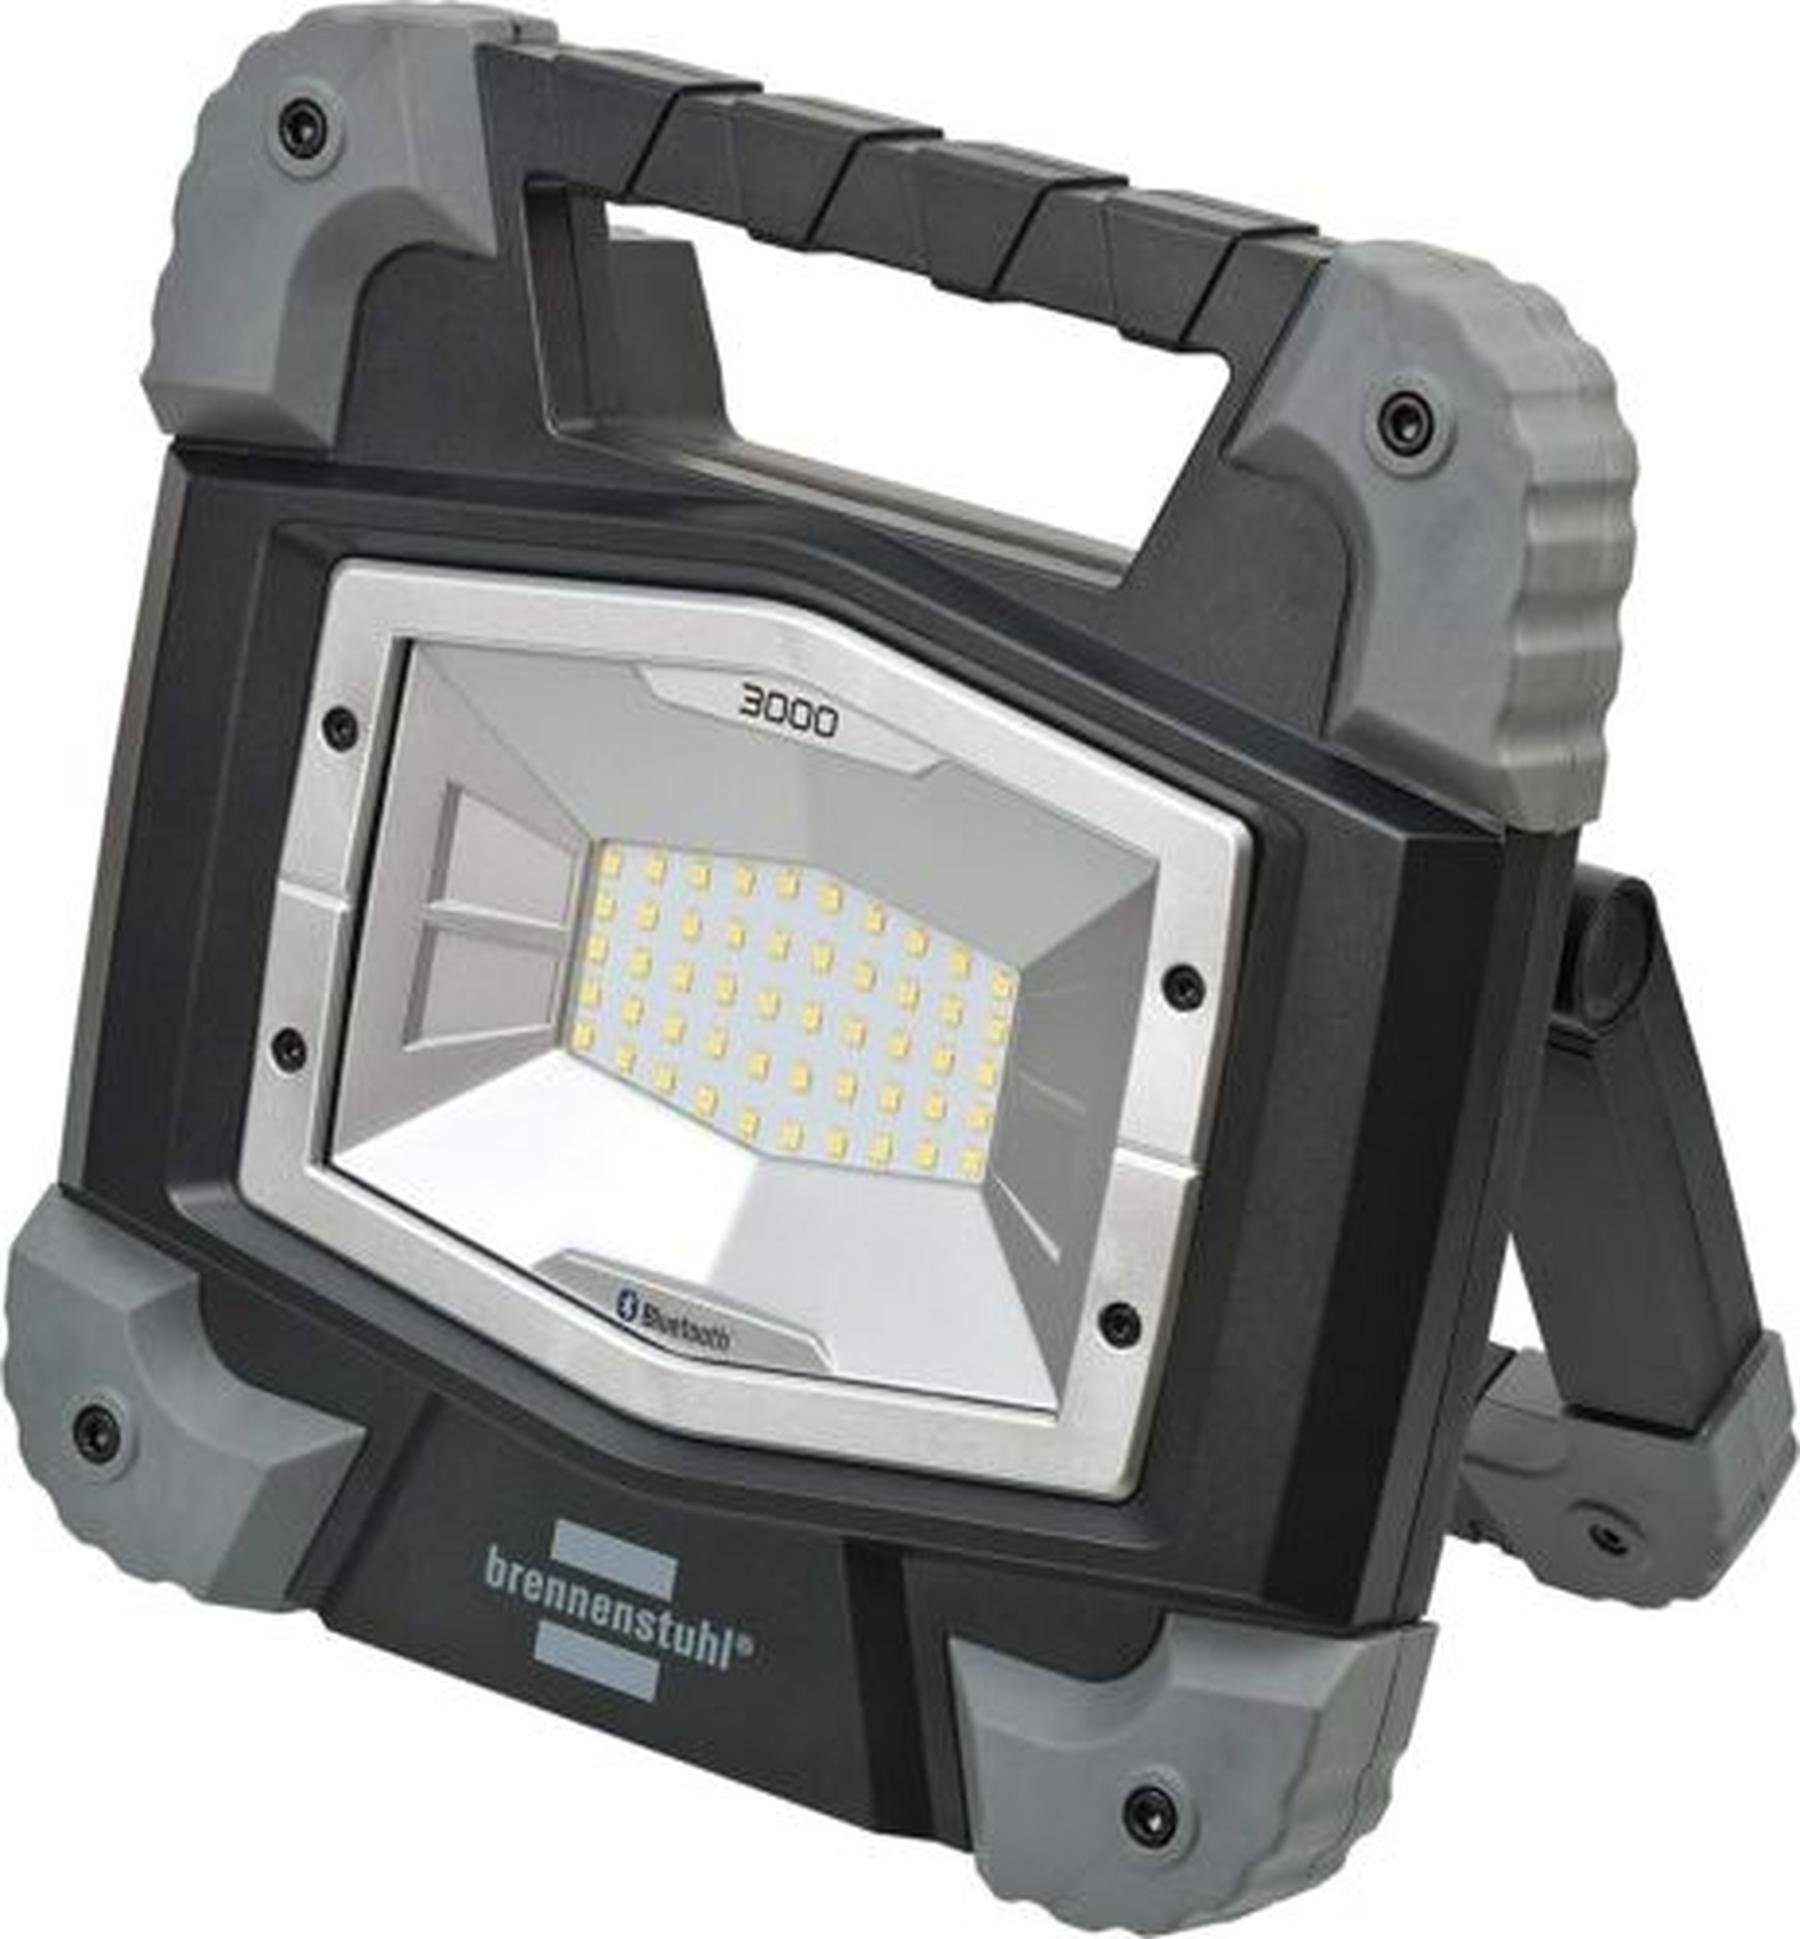 Brennenstuhl LED Taschenlampe Brennenstuhl Mobiler Bluetooth LED Strahler  TORAN 3000 MB | Strahler